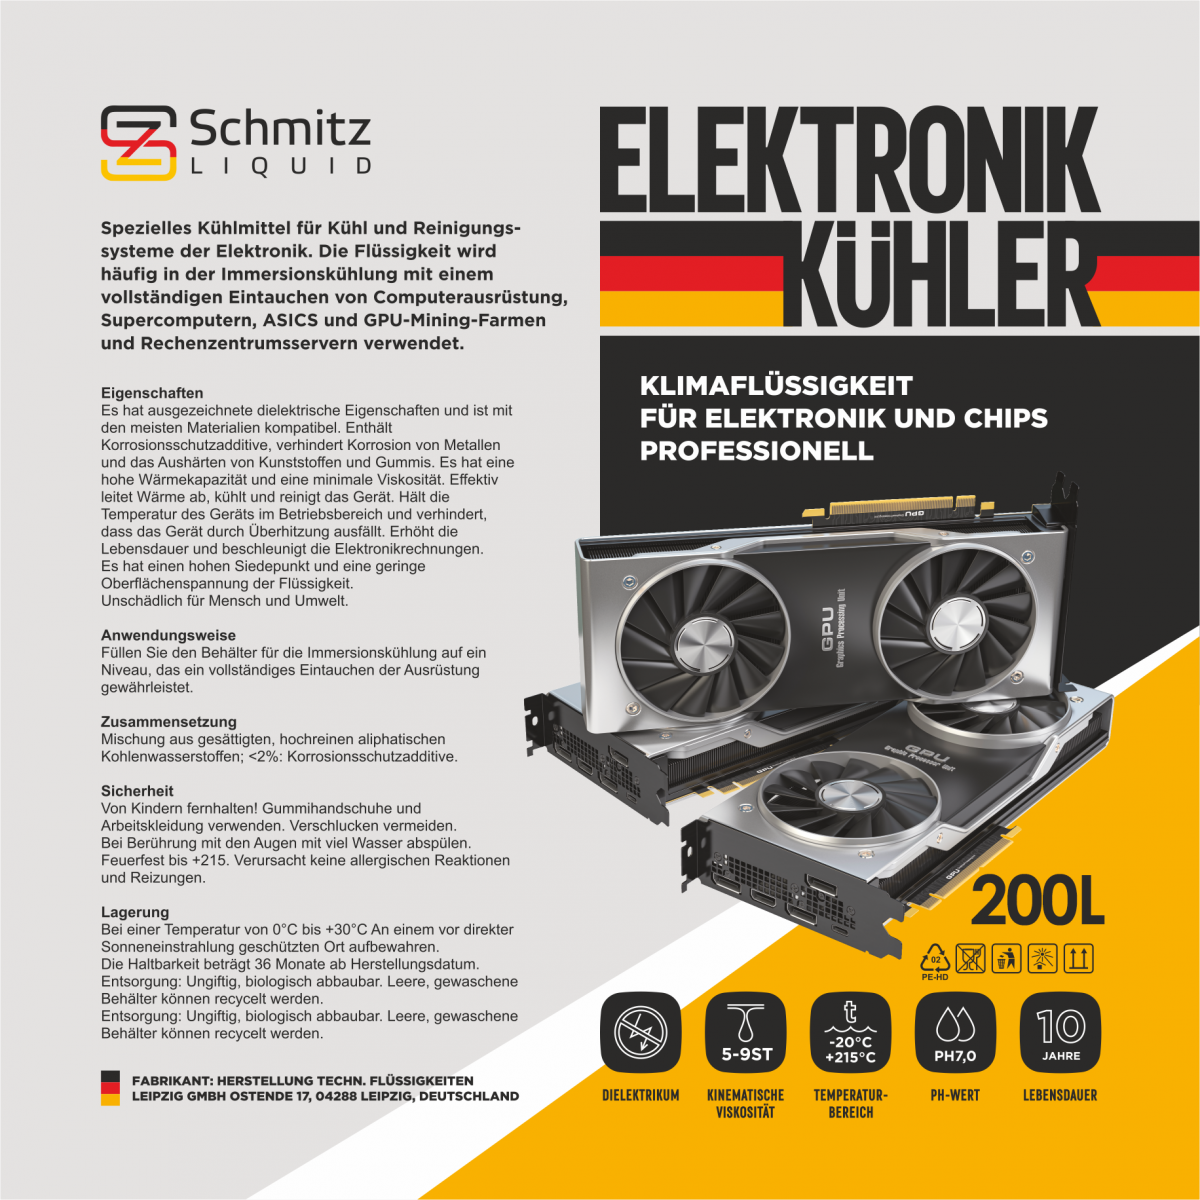 Иммерсионная жидкость SCHMITZ Liquid Elektronik Kühler, 200л